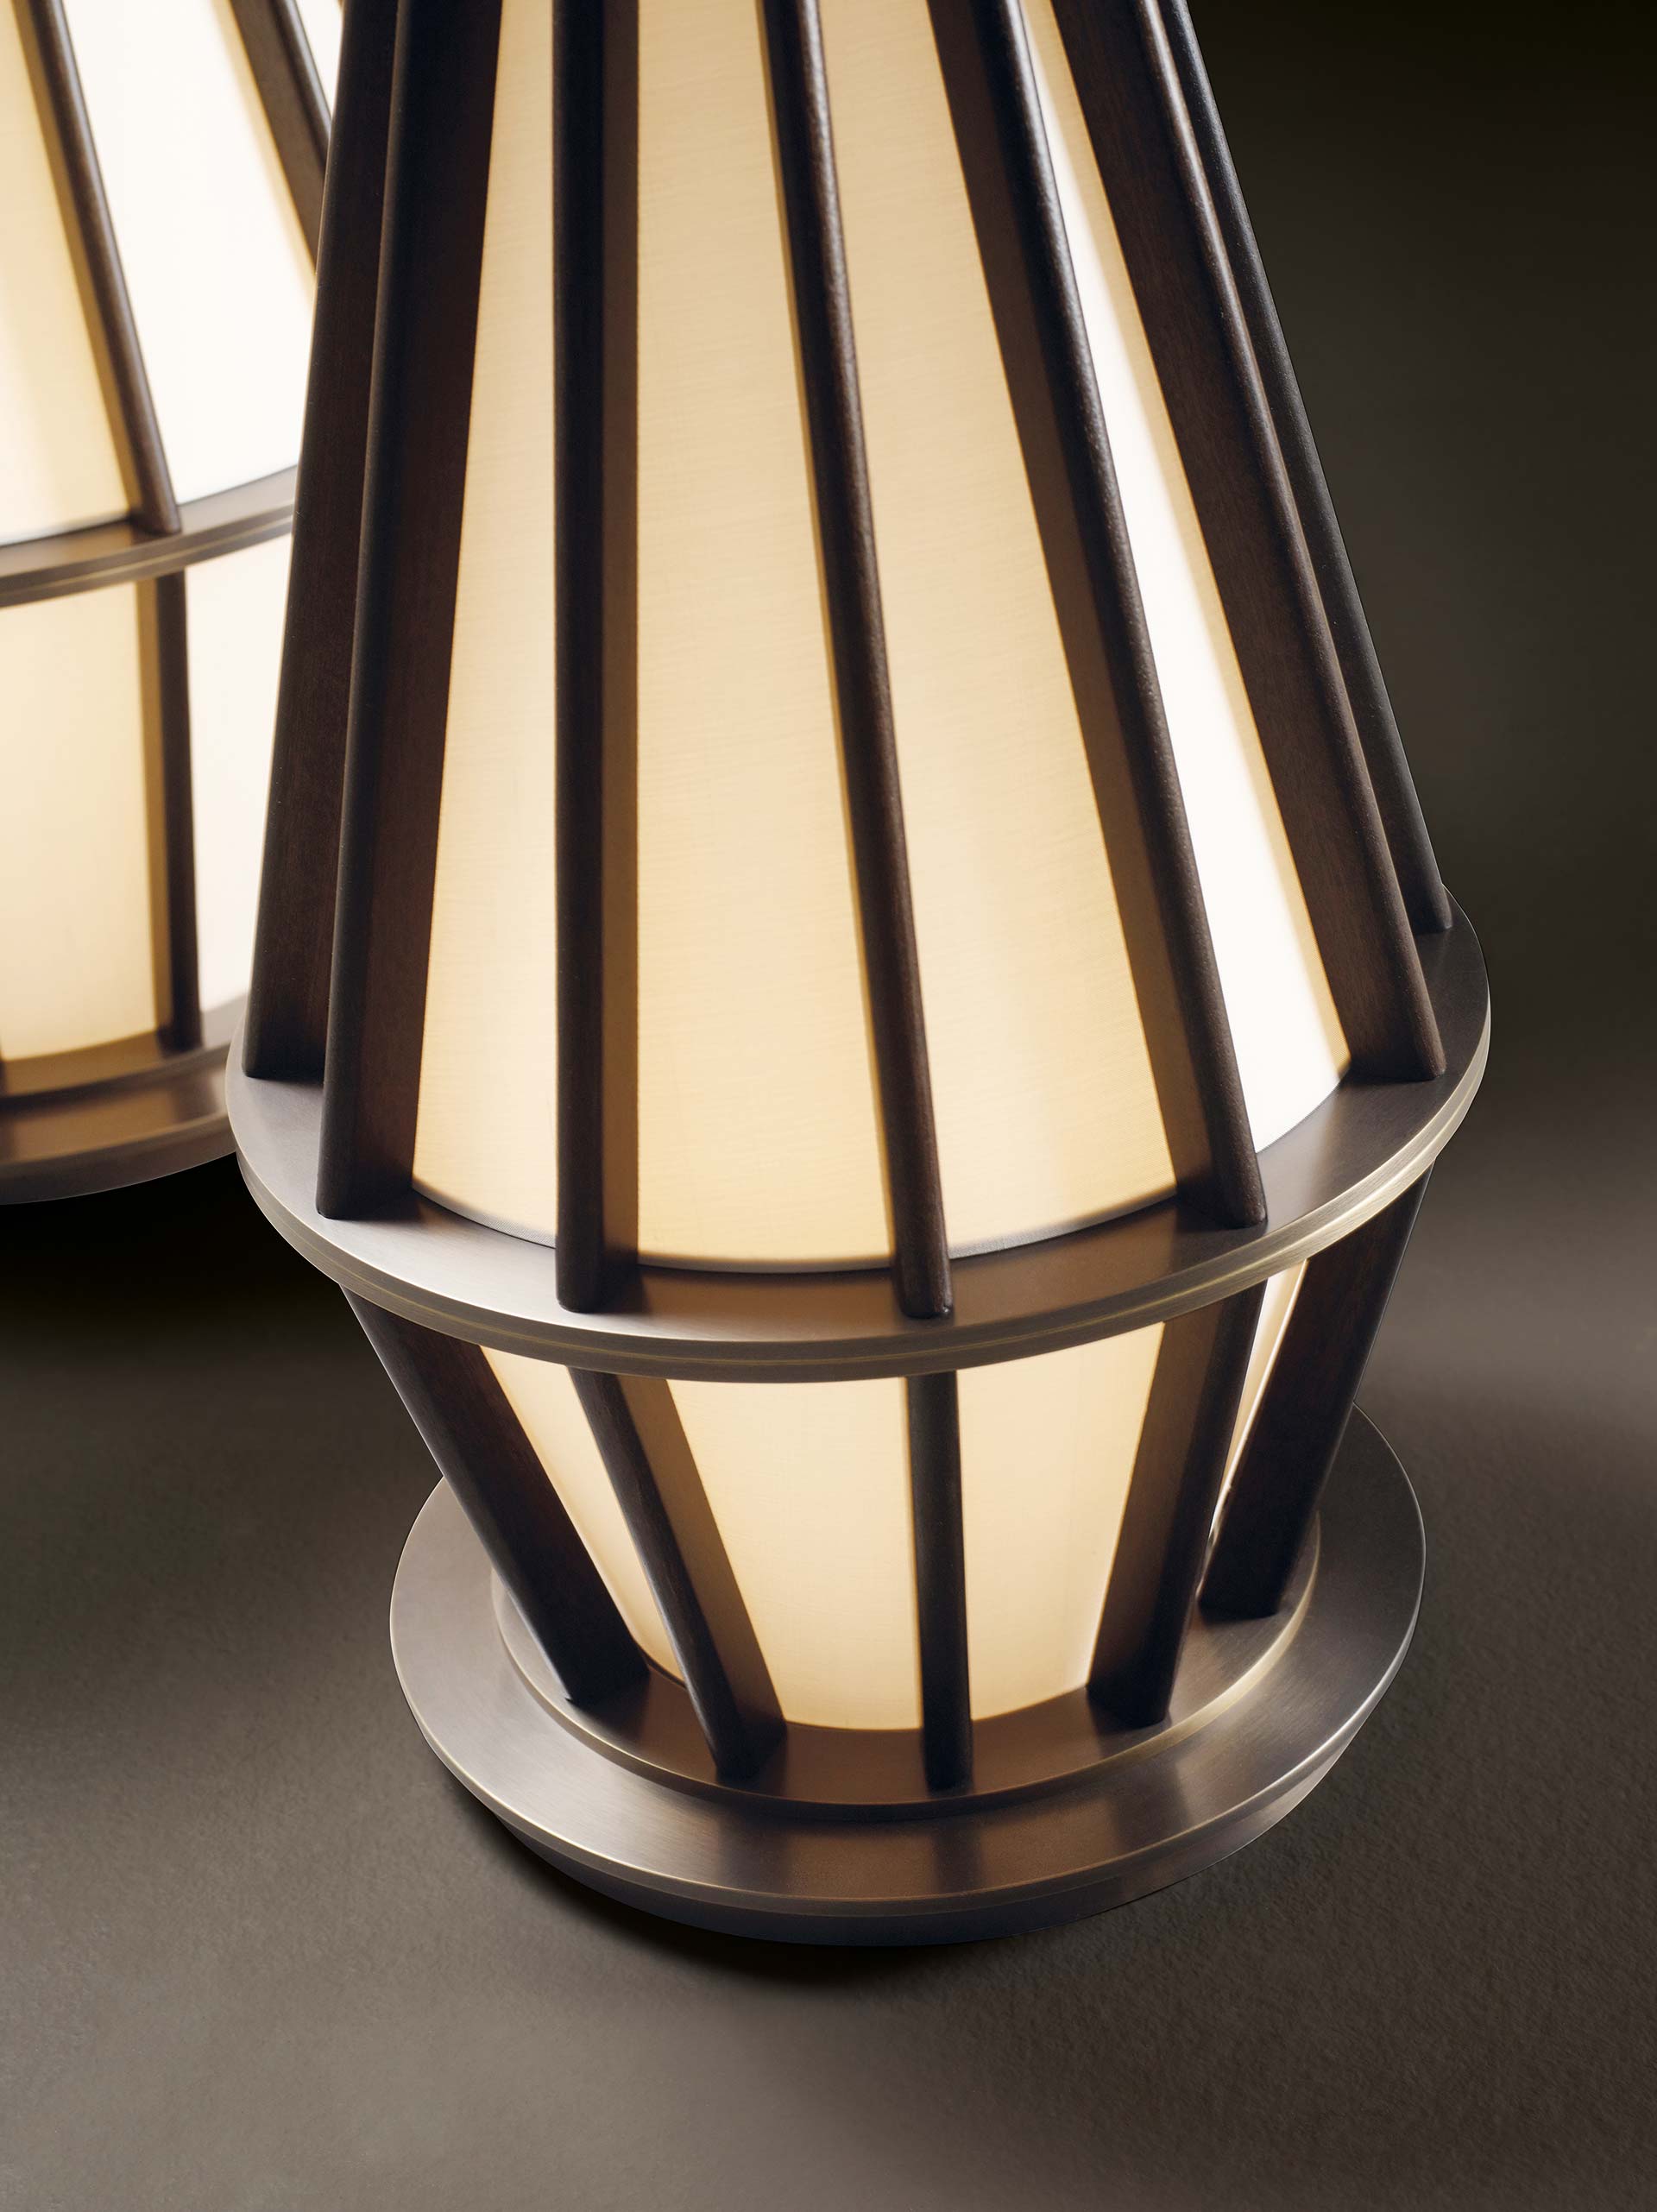 Mirtilla è una lampada da terra a LED con struttura in bronzo e legno e paralume in seta, della collezione Amaranthine Tales di Promemoria | Promemoria